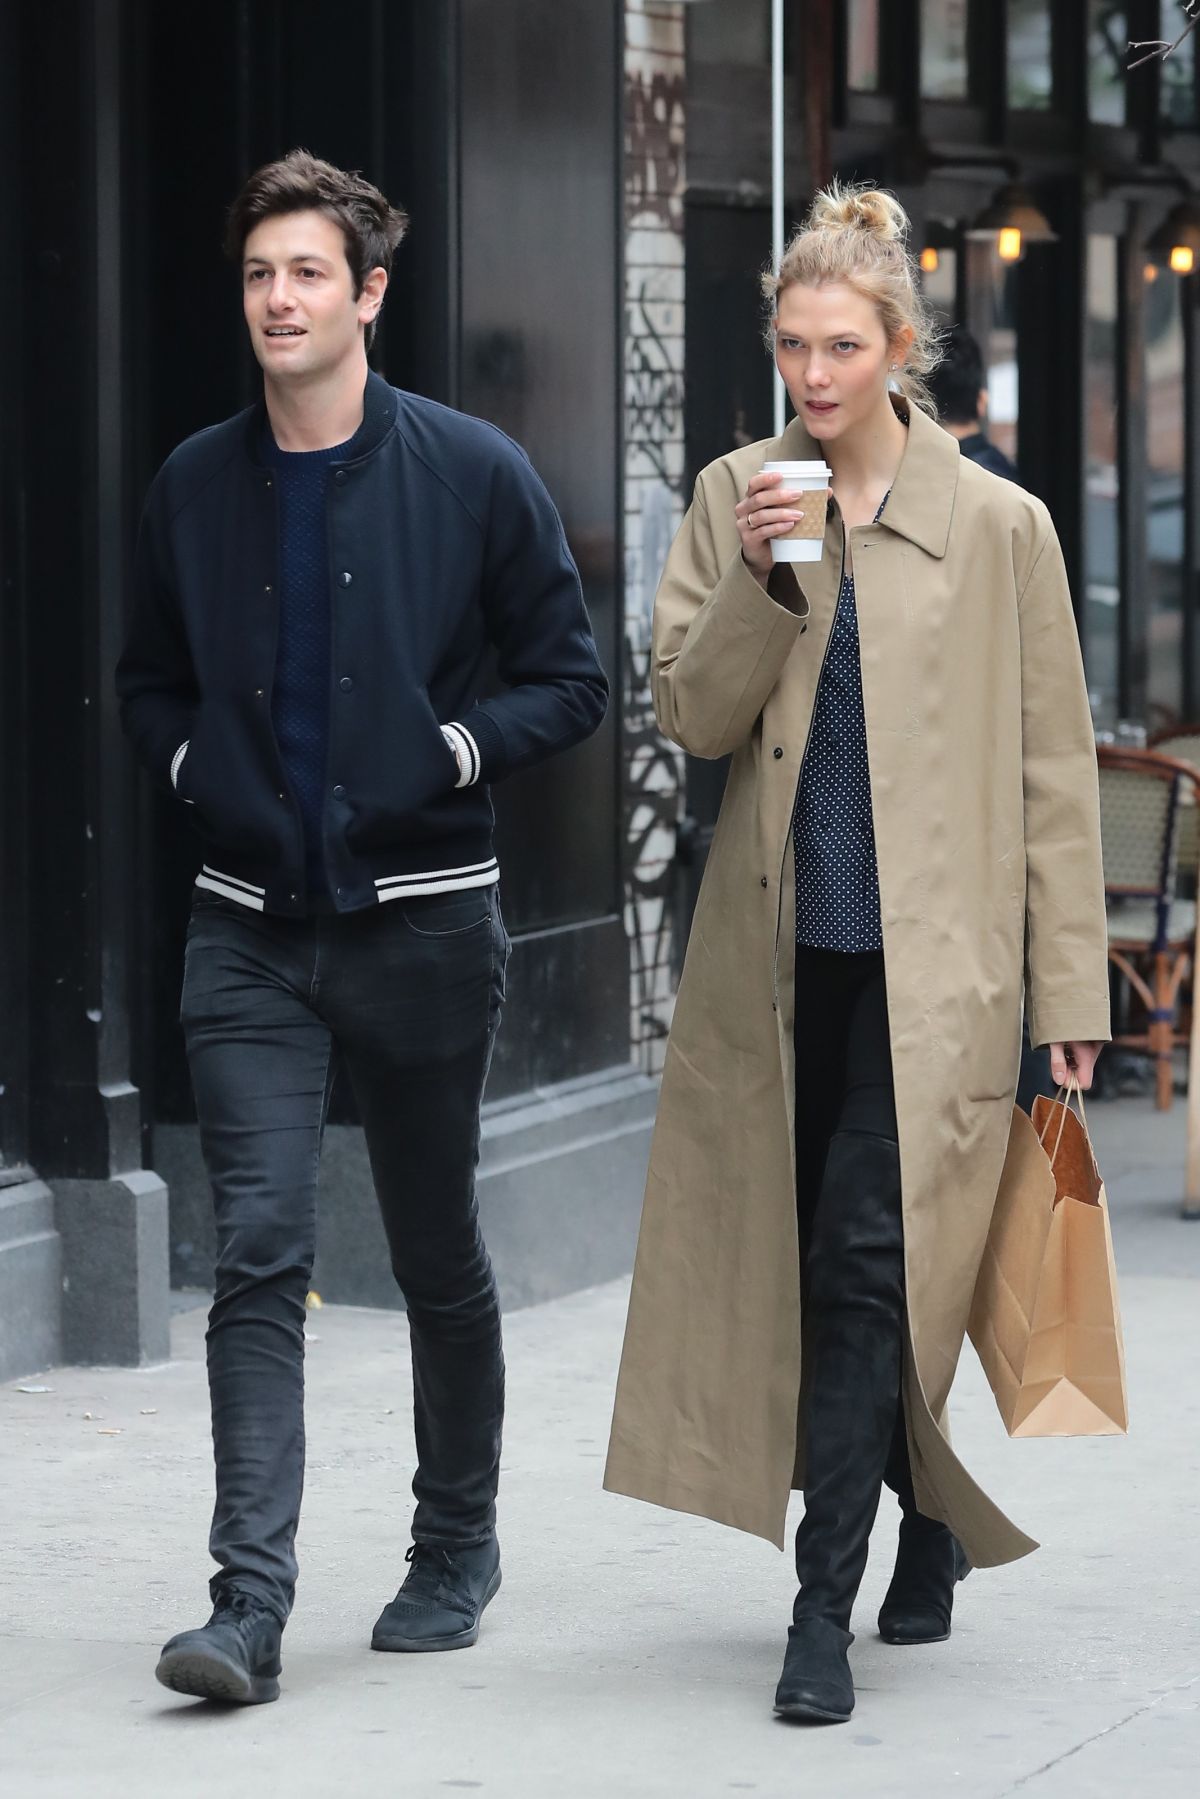 KARLIE KLOSS and Joshua Kushner Out Shopping in New York 03/26/2017 ...